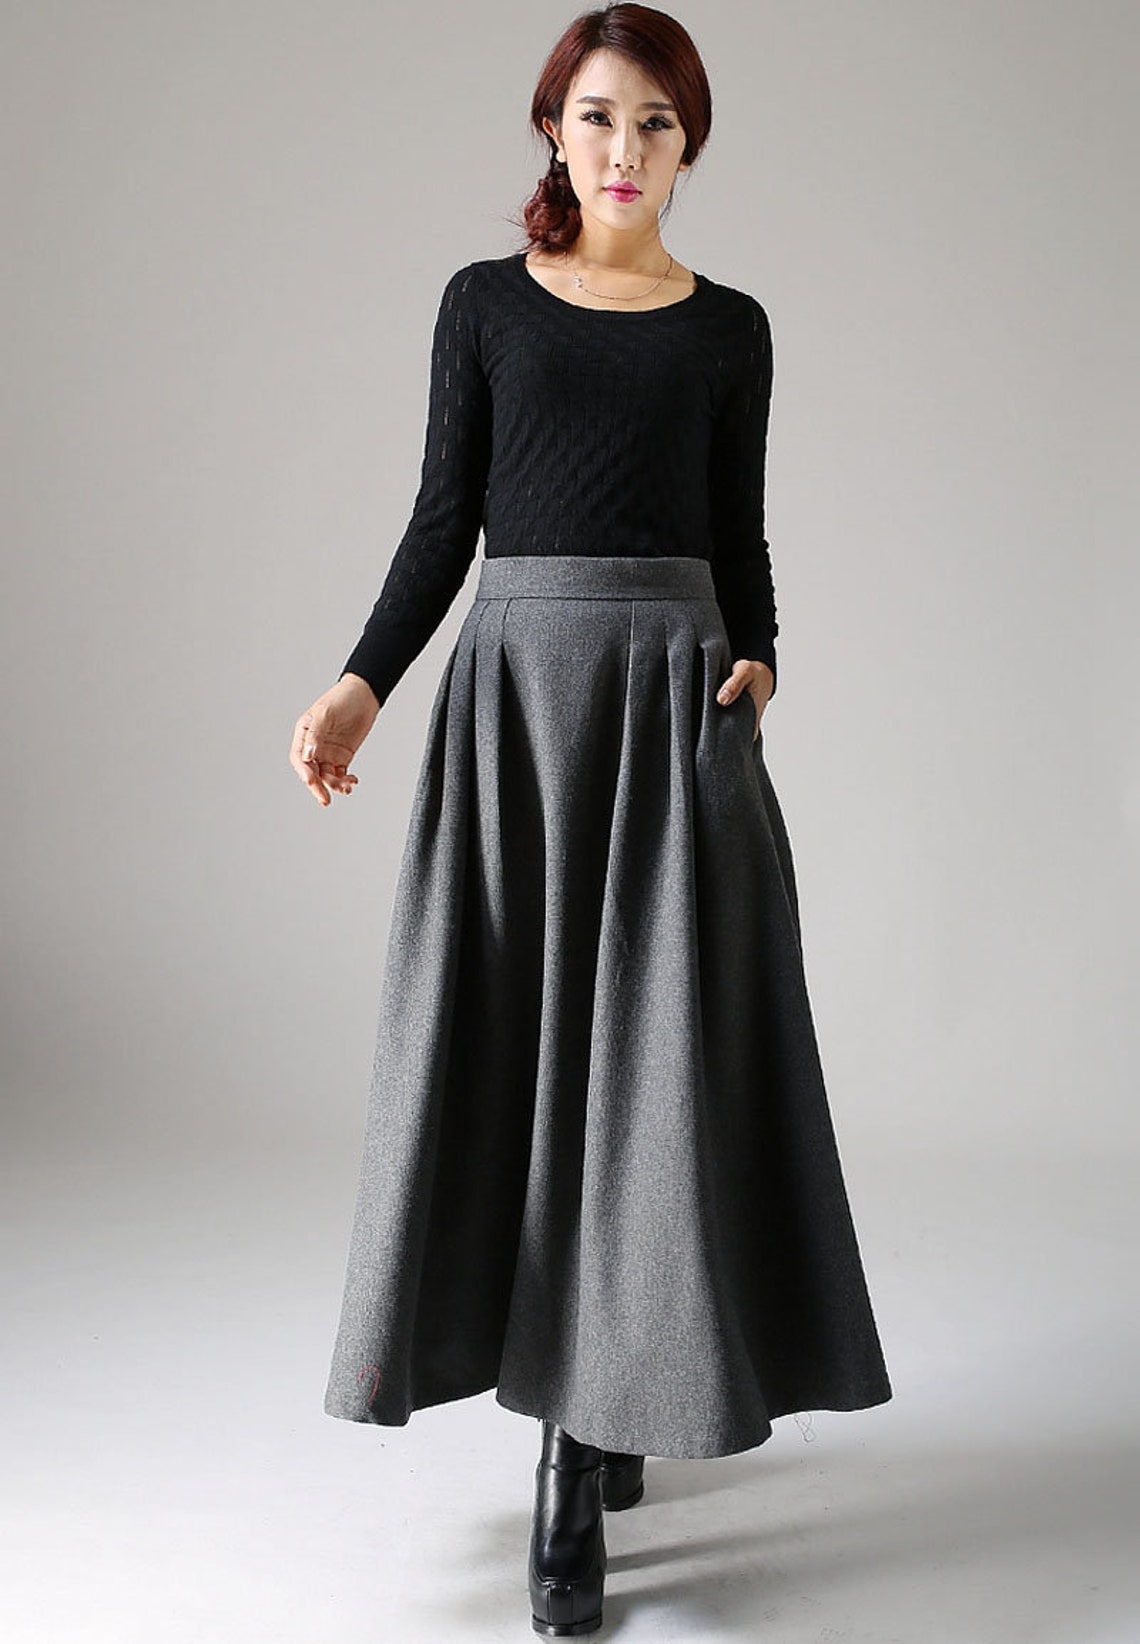 Wool skirt A Line Maxi skirt winter skirt women Long skirt | Etsy